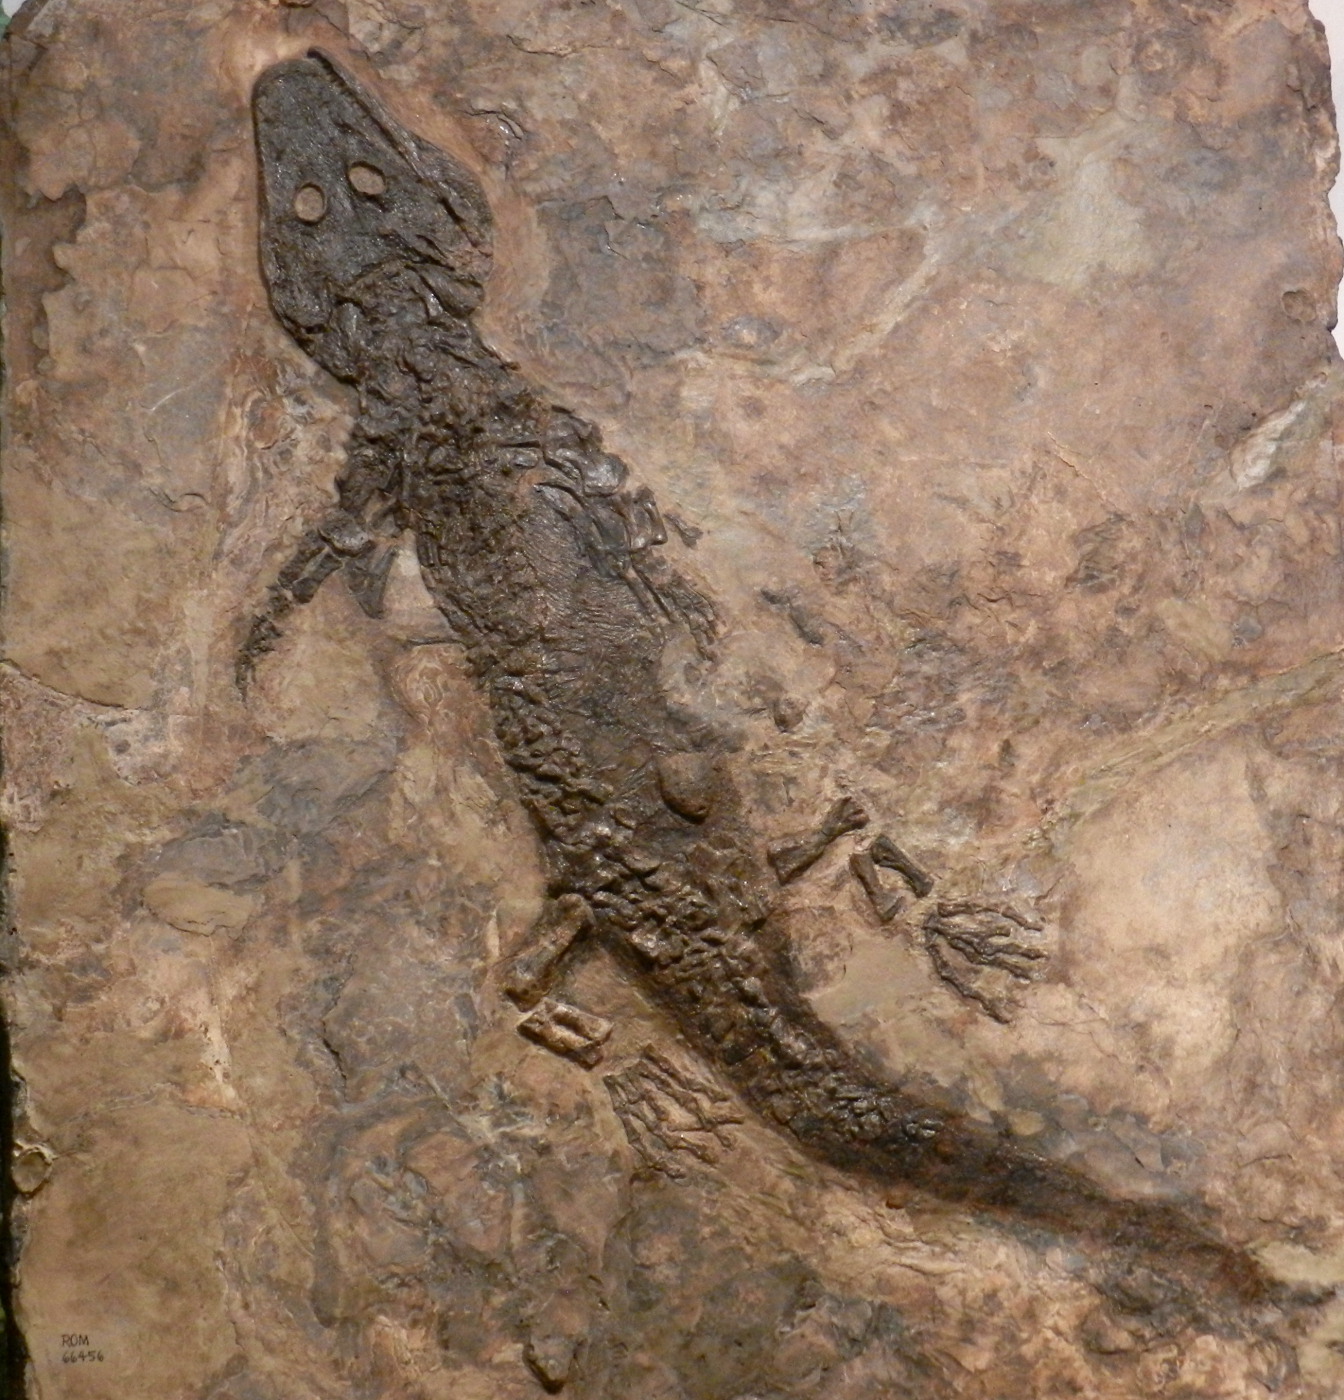 fossil [540 kb]